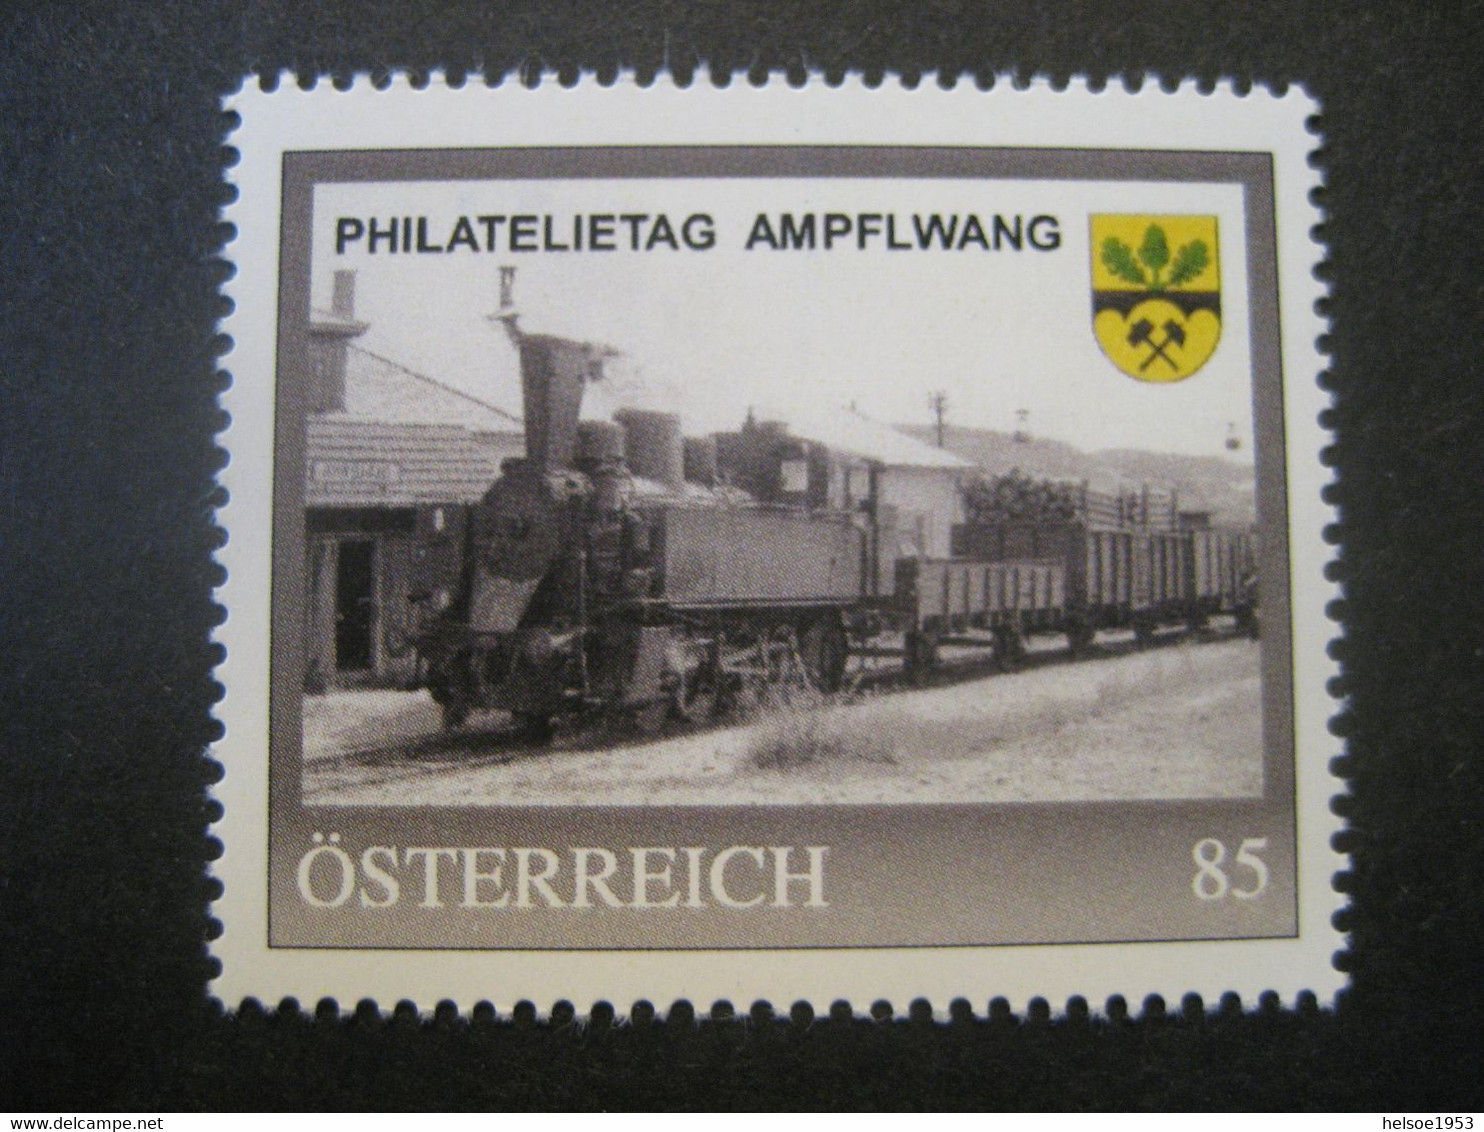 Österreich- Philatelietag Ampflwang 8133336 ** Postfrisch - Personnalized Stamps